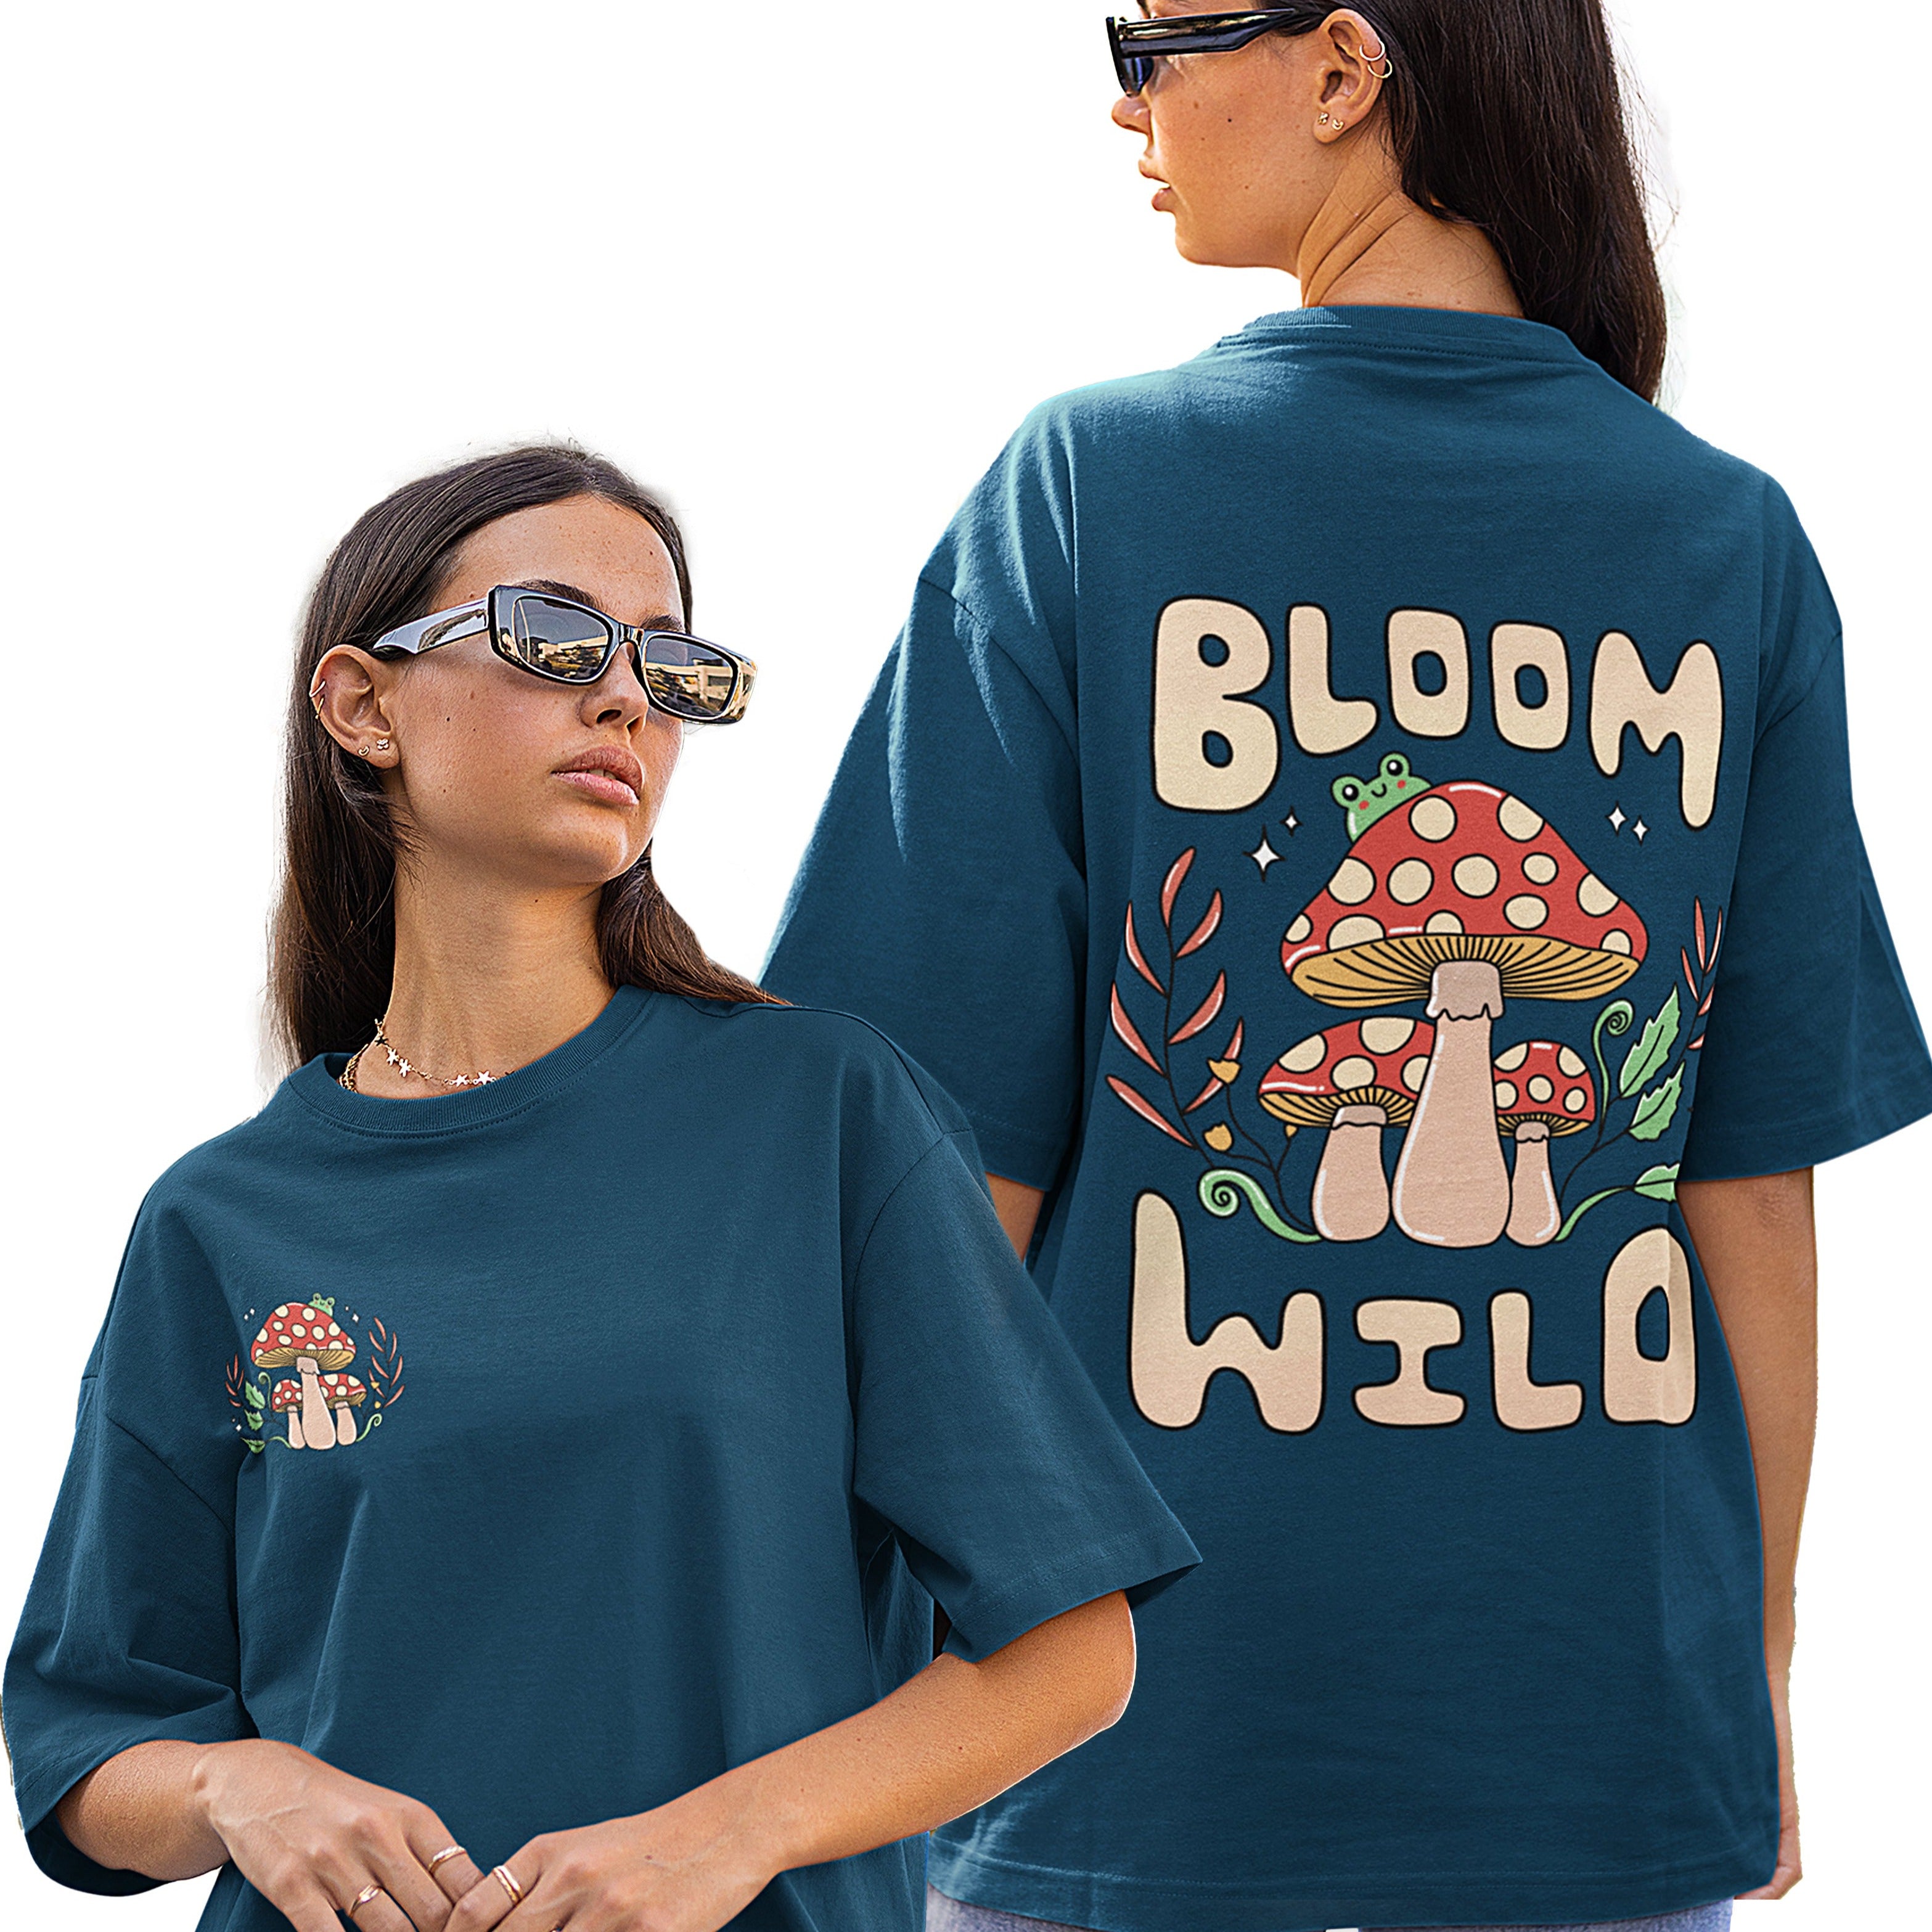 Bloom Wild Back Printed Unisex Oversized T-shirts